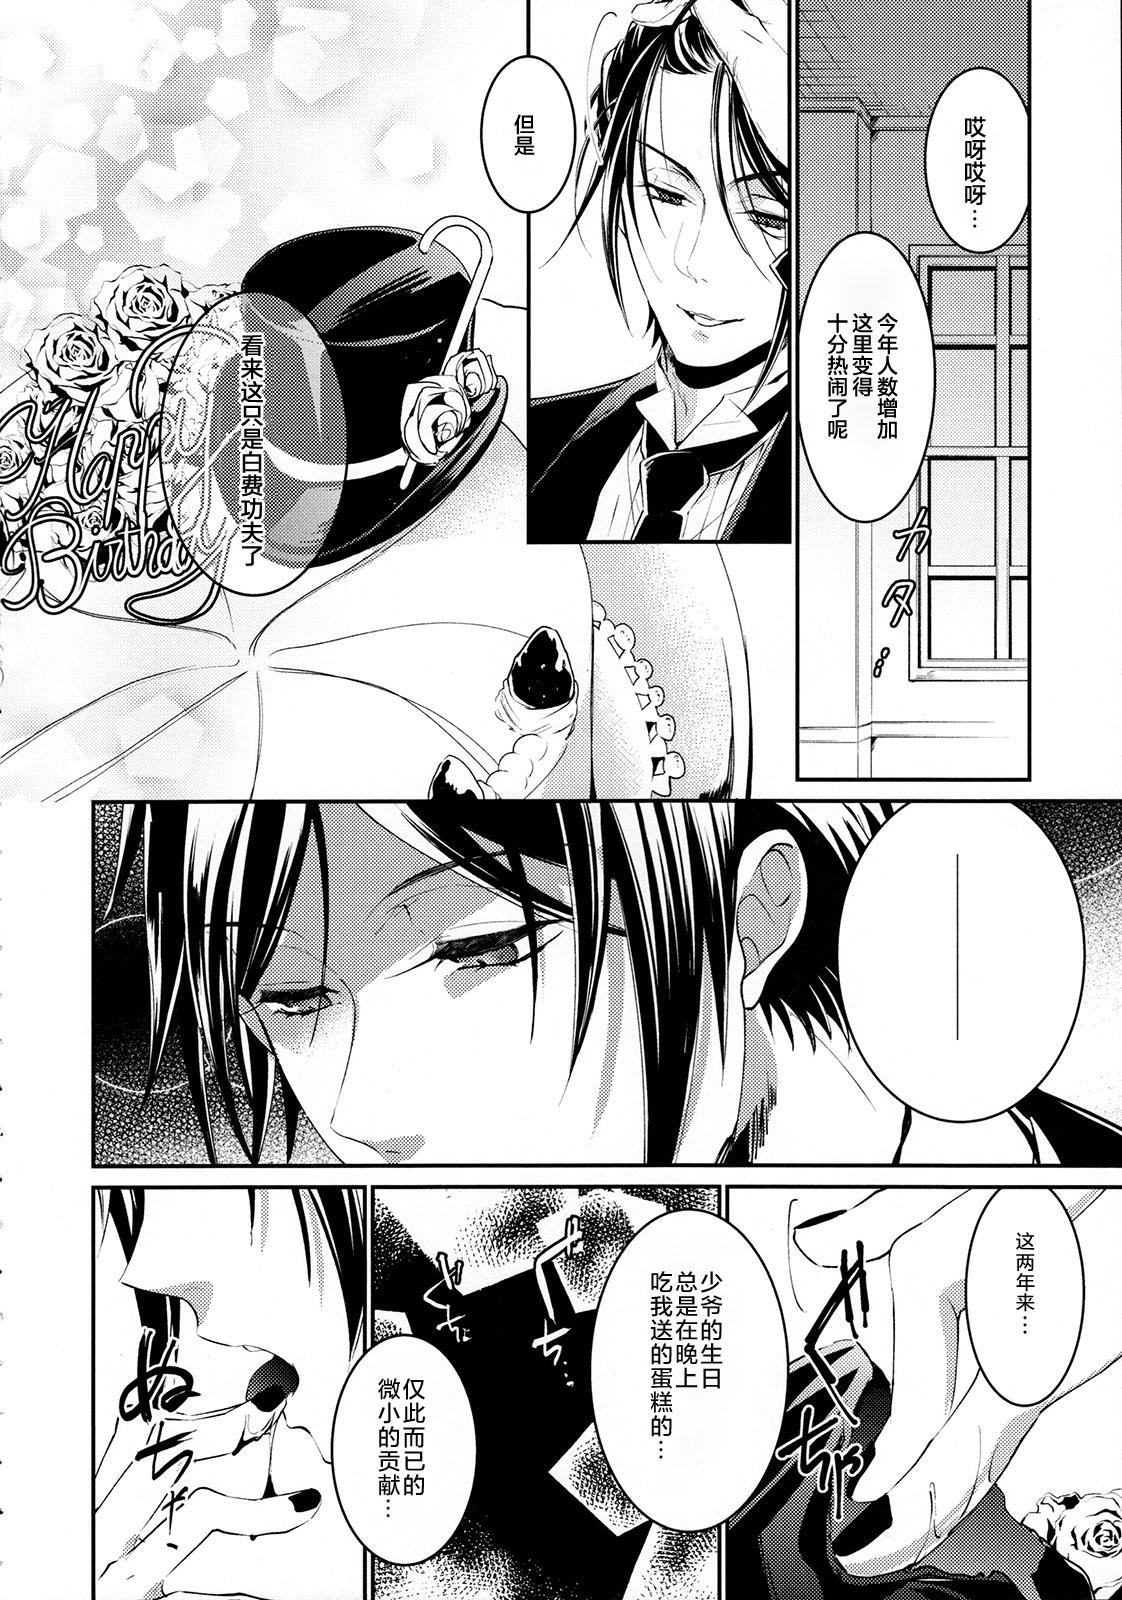 Tinder Yoru no Mori - Black butler Sharing - Page 4